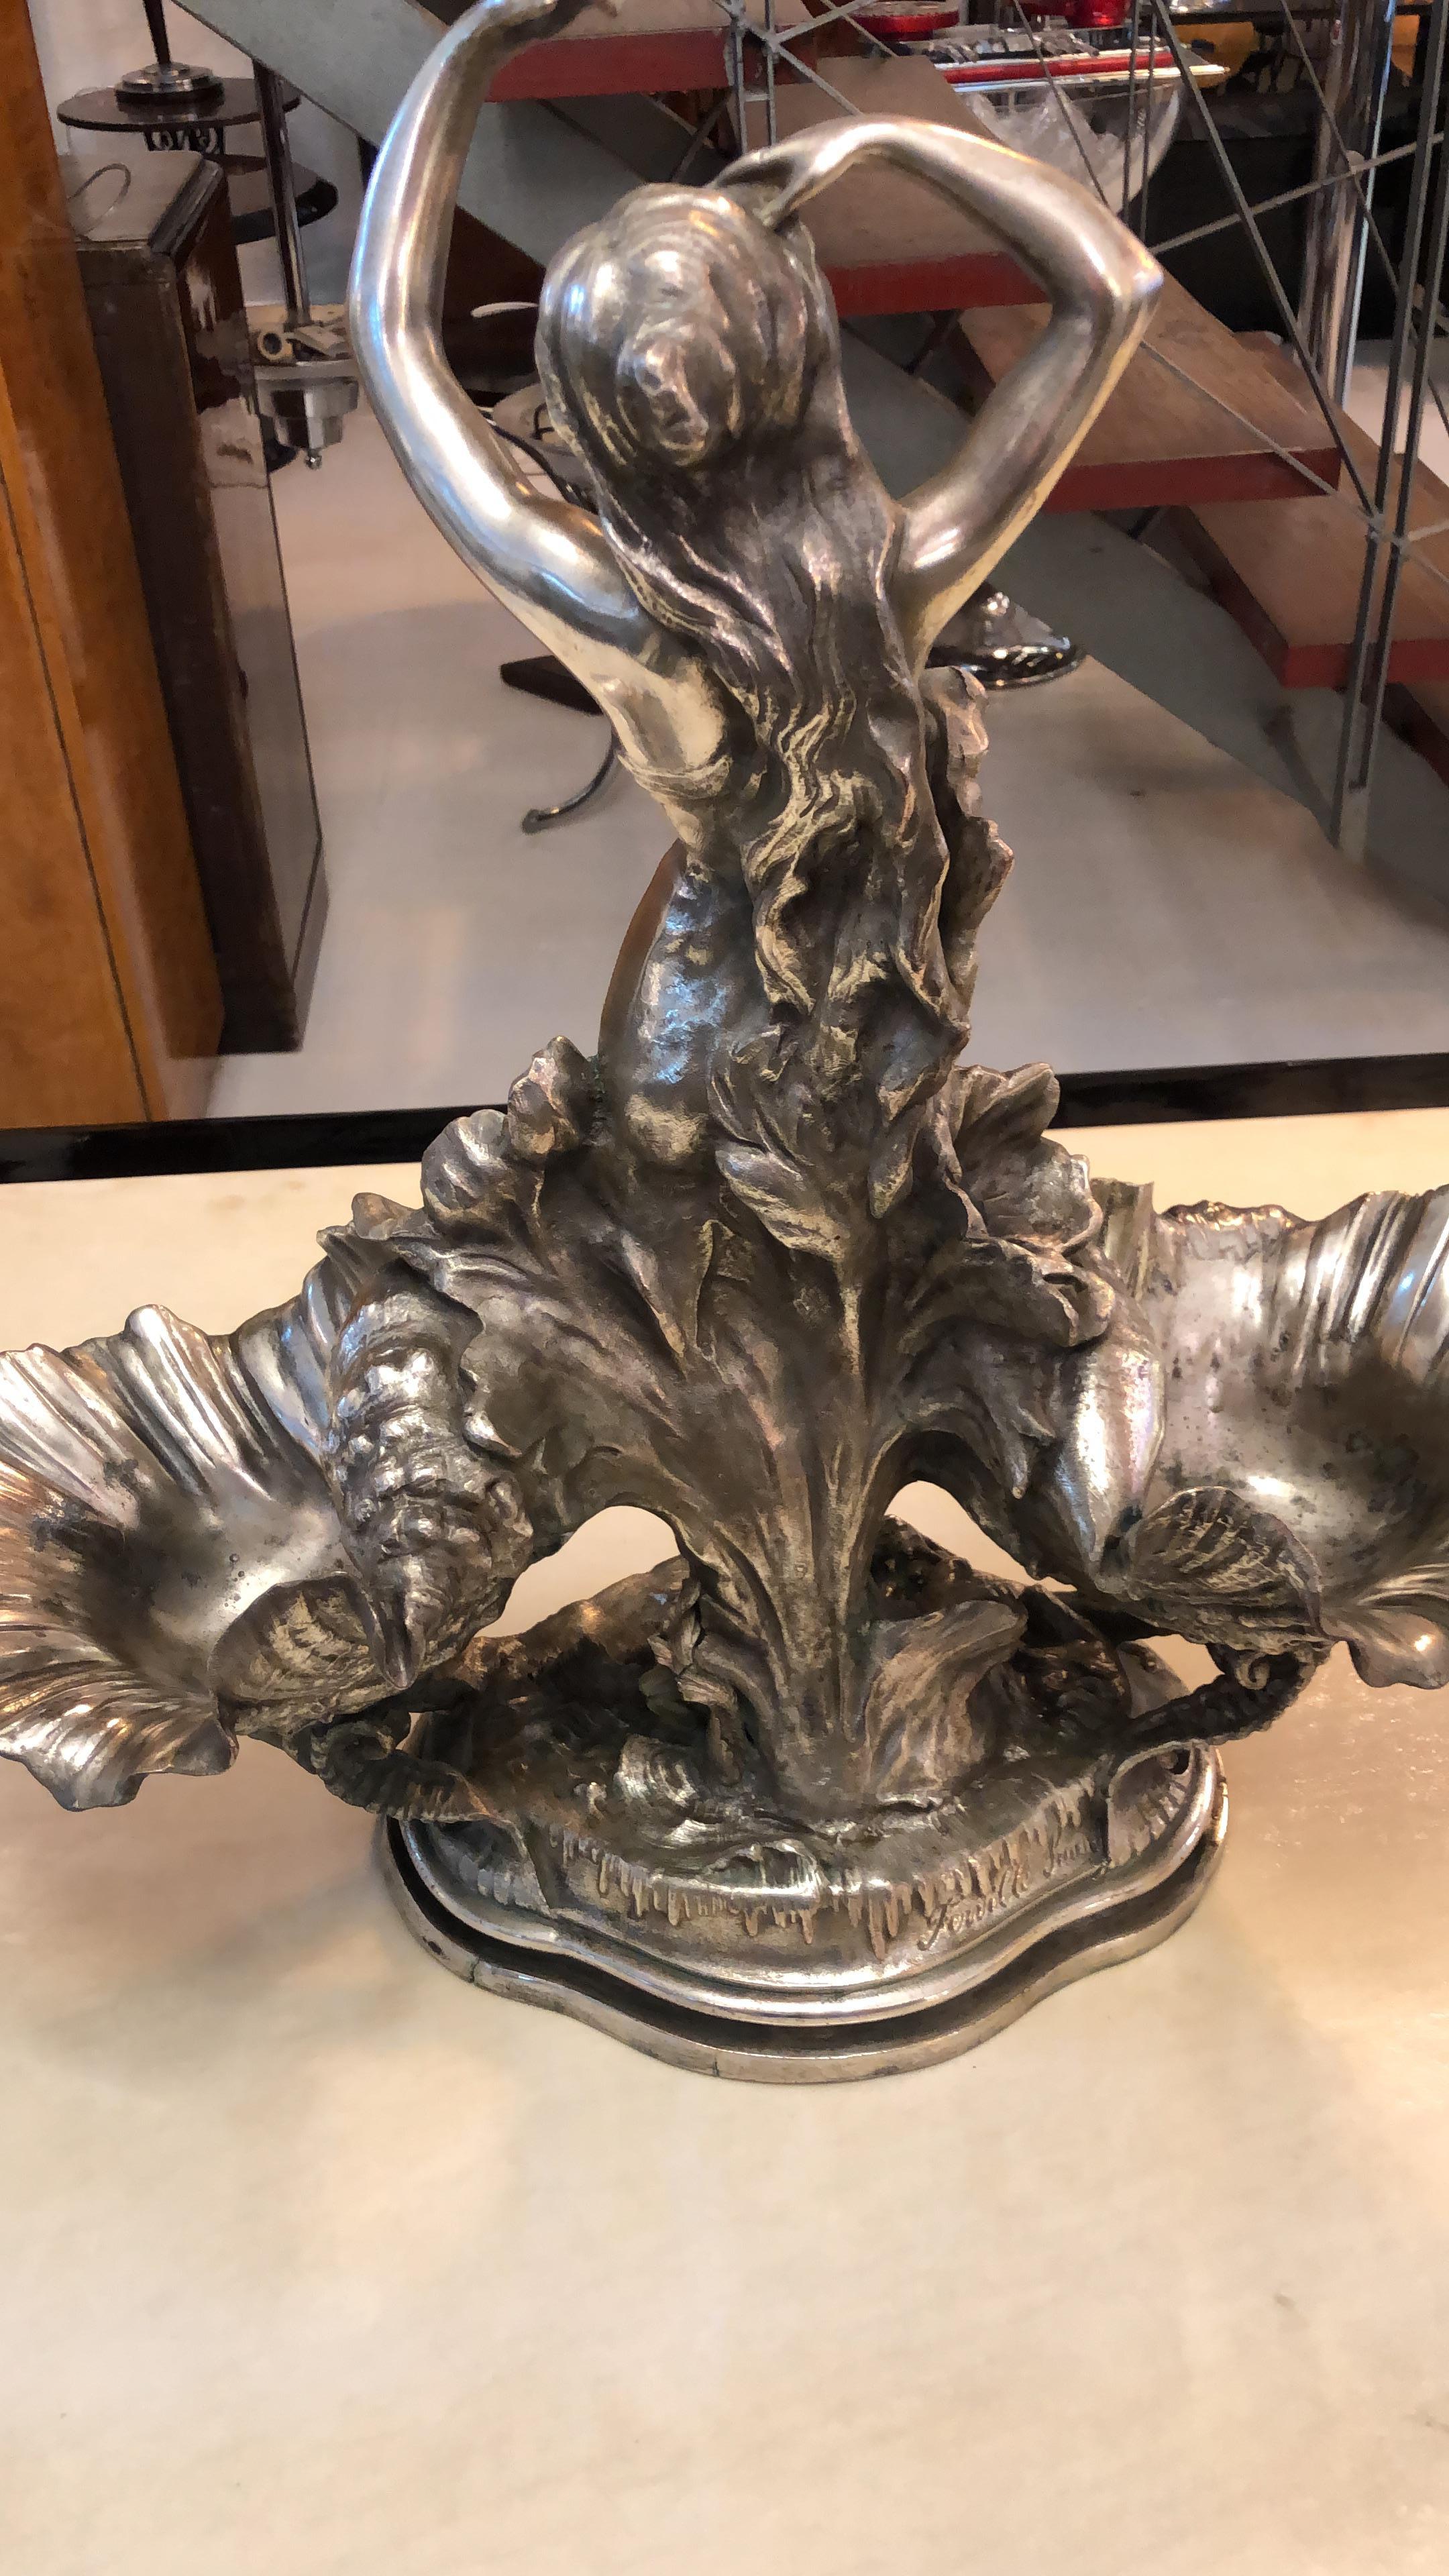 Plato de masas o dulces,
Materiales : Chapado en plata 
Charles Georges Ferville-Suan fue un escultor francés.
Nació en Le Mans, en Sarthe, el 16 de enero de 1847, y fue adoptado por el pintor Charles Suan. Vivió durante cierto tiempo en Montmartre,